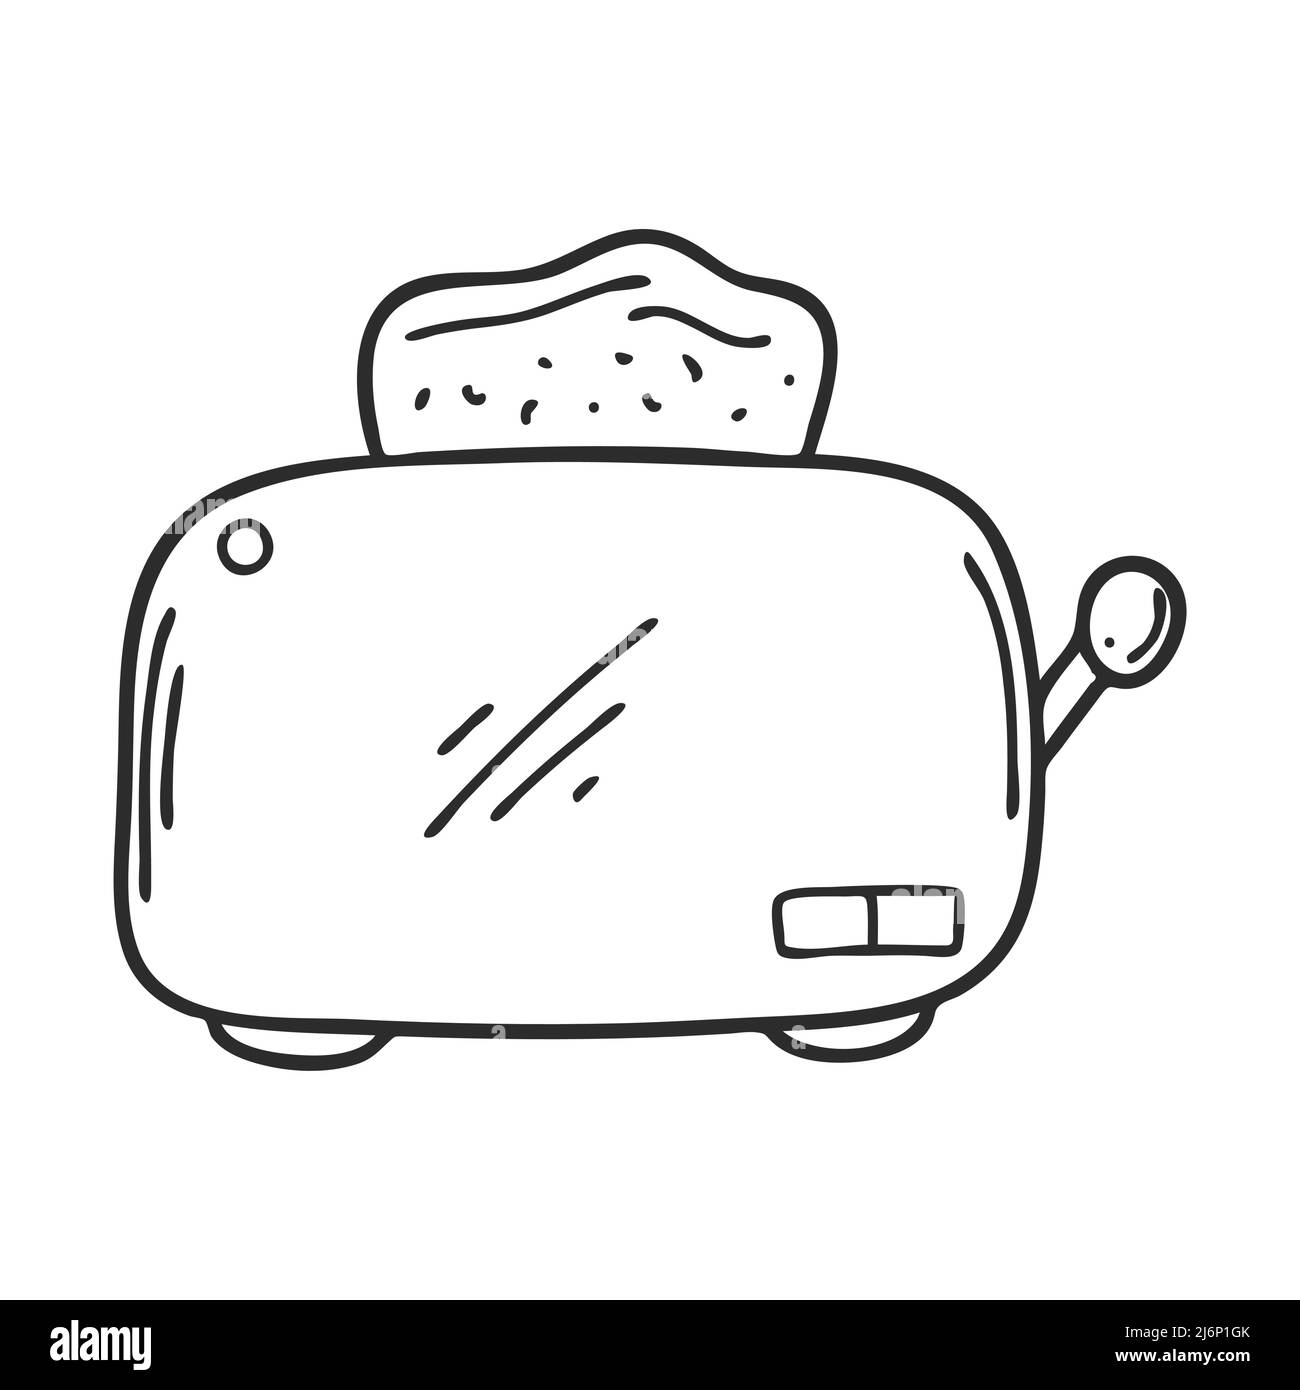 Doodle Stil elektrischer Toaster. Küchengerät zum Toasten zum Frühstück. Gestaltungselement zum Dekorieren von Menüs, Rezepten, Verpackungen für Lebensmittel. Han Stock Vektor